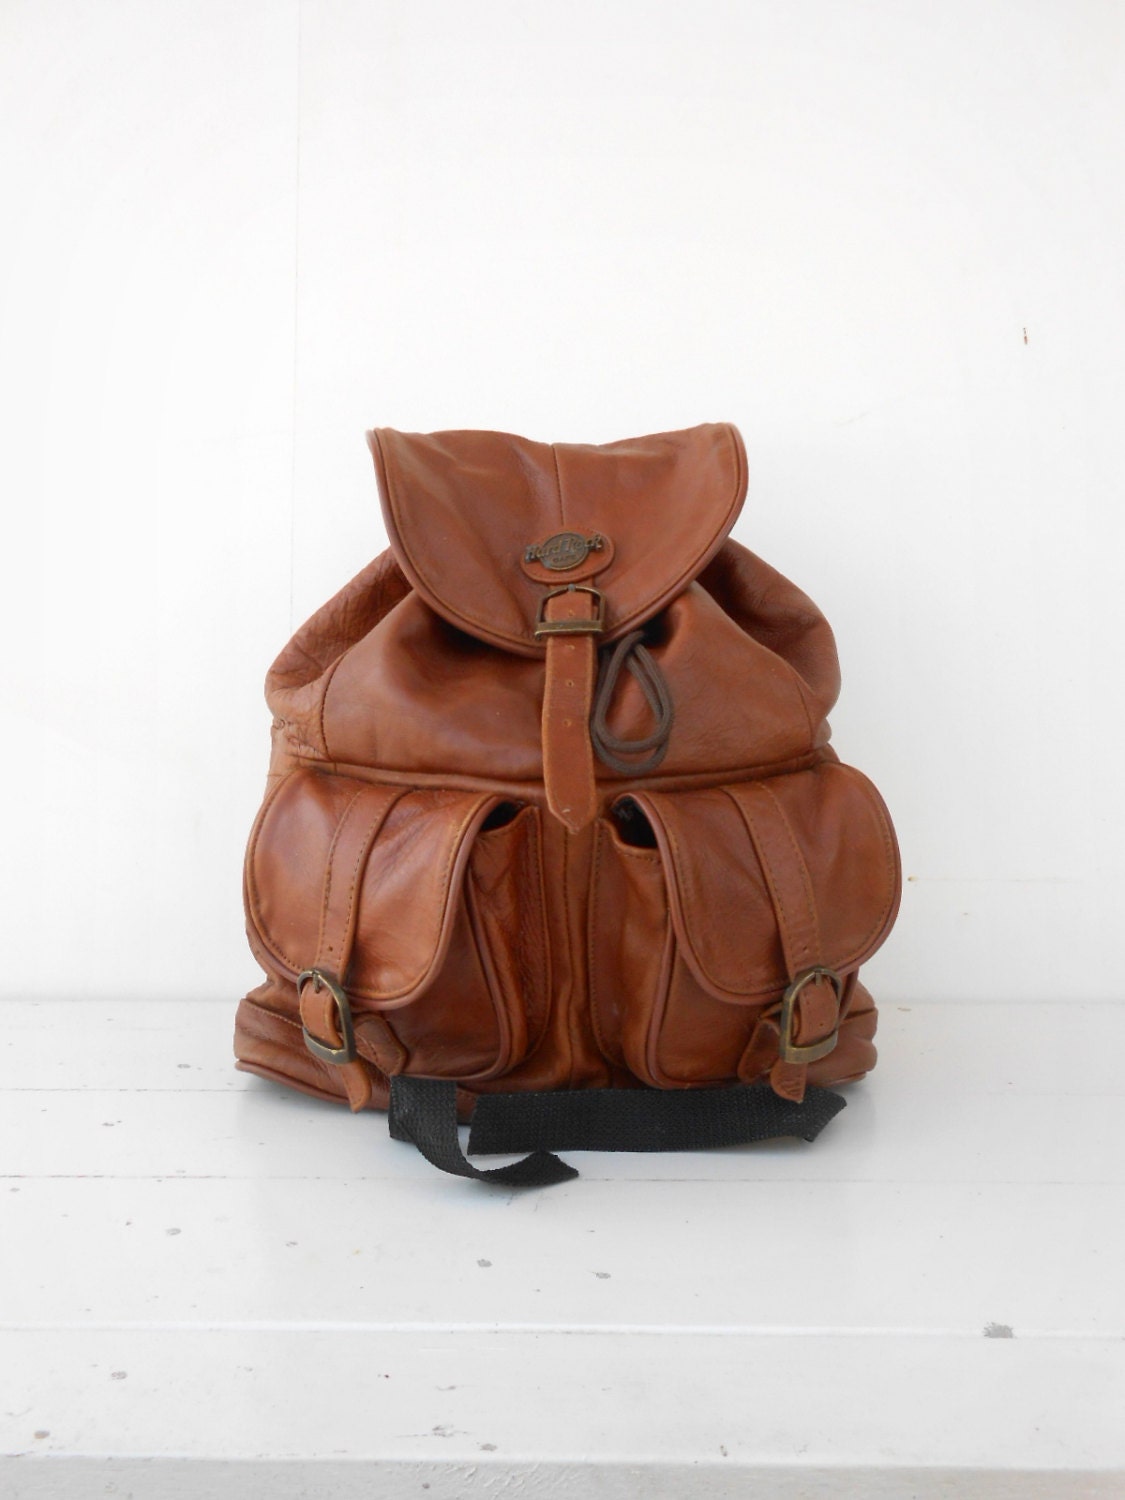 SALE Vintage Hard Rock Cafe Brown Leather Backpack / Leather